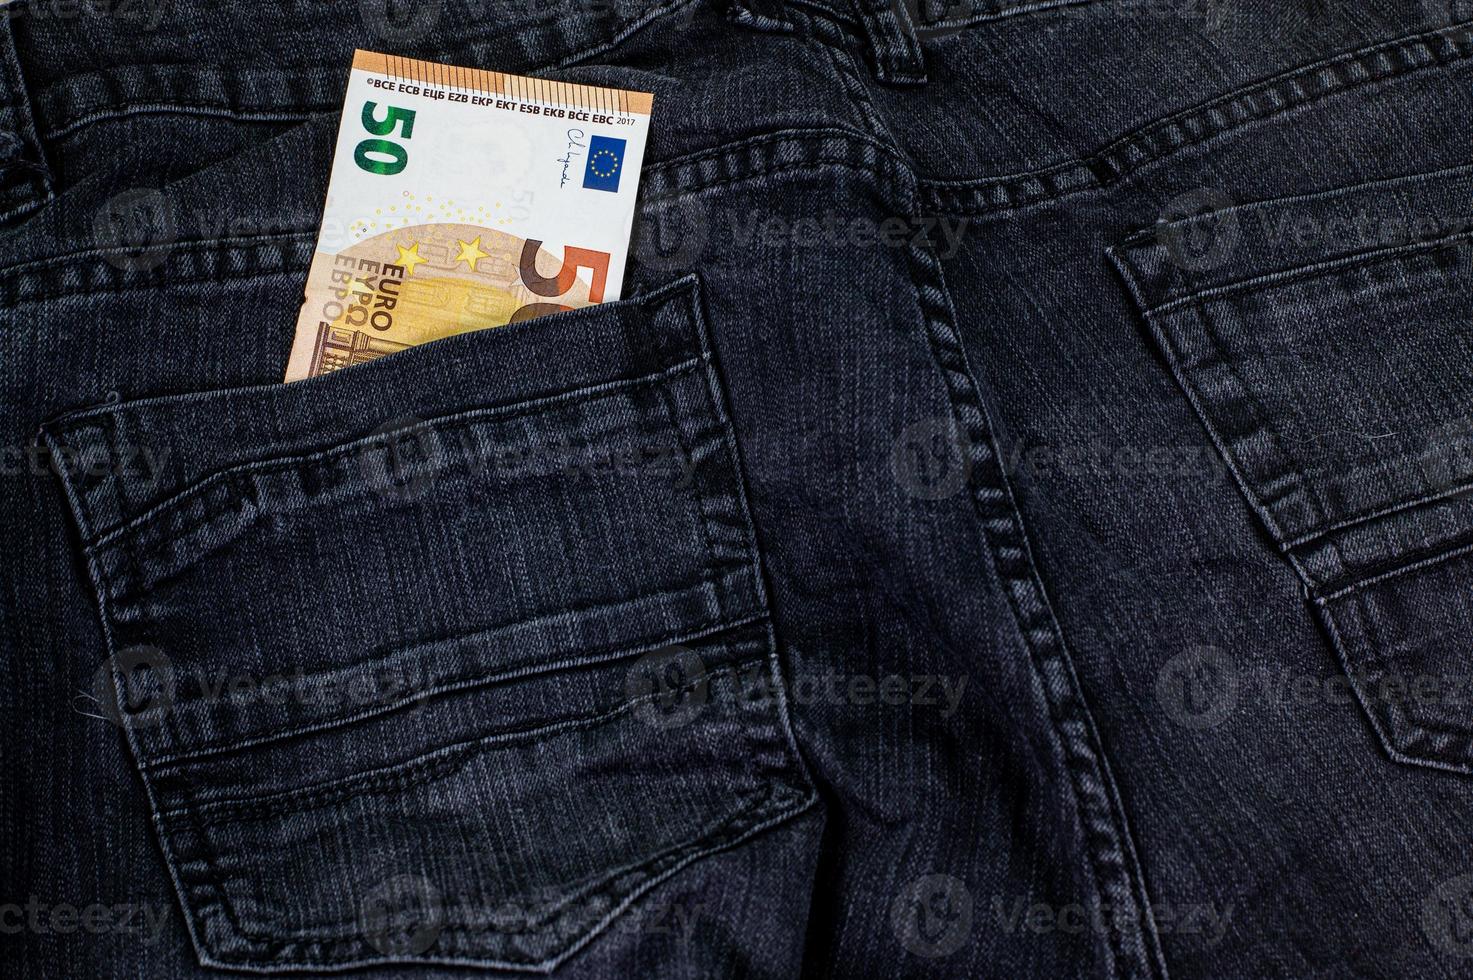 50 euro che escono dalla tasca dei jeans foto